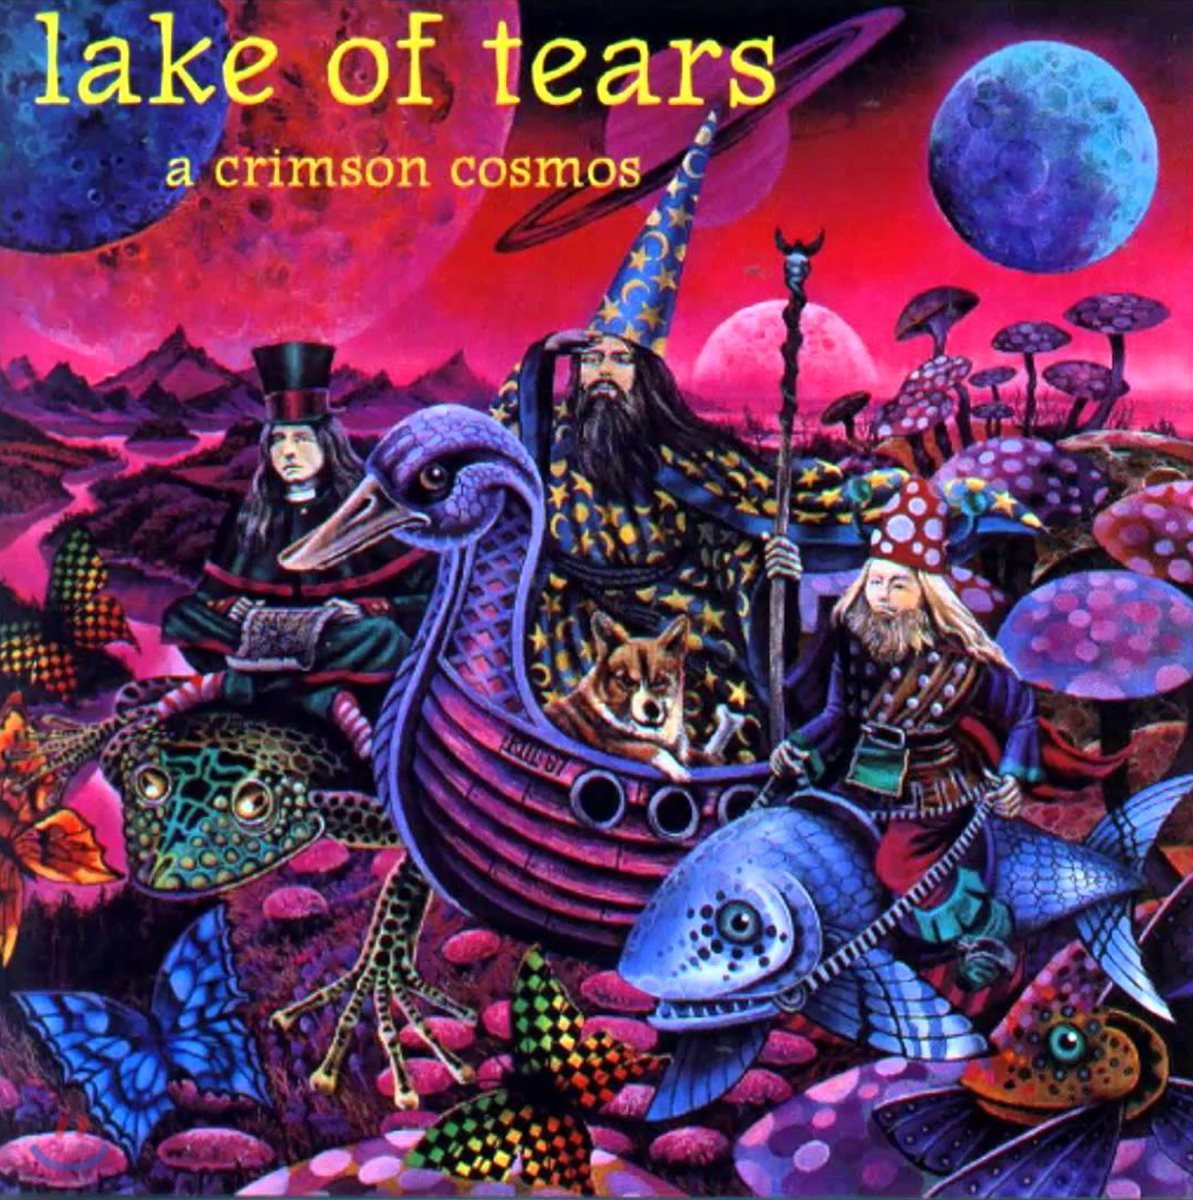 Lake Of Tears (레이크 어브 티어스) - A Crimson Cosmos